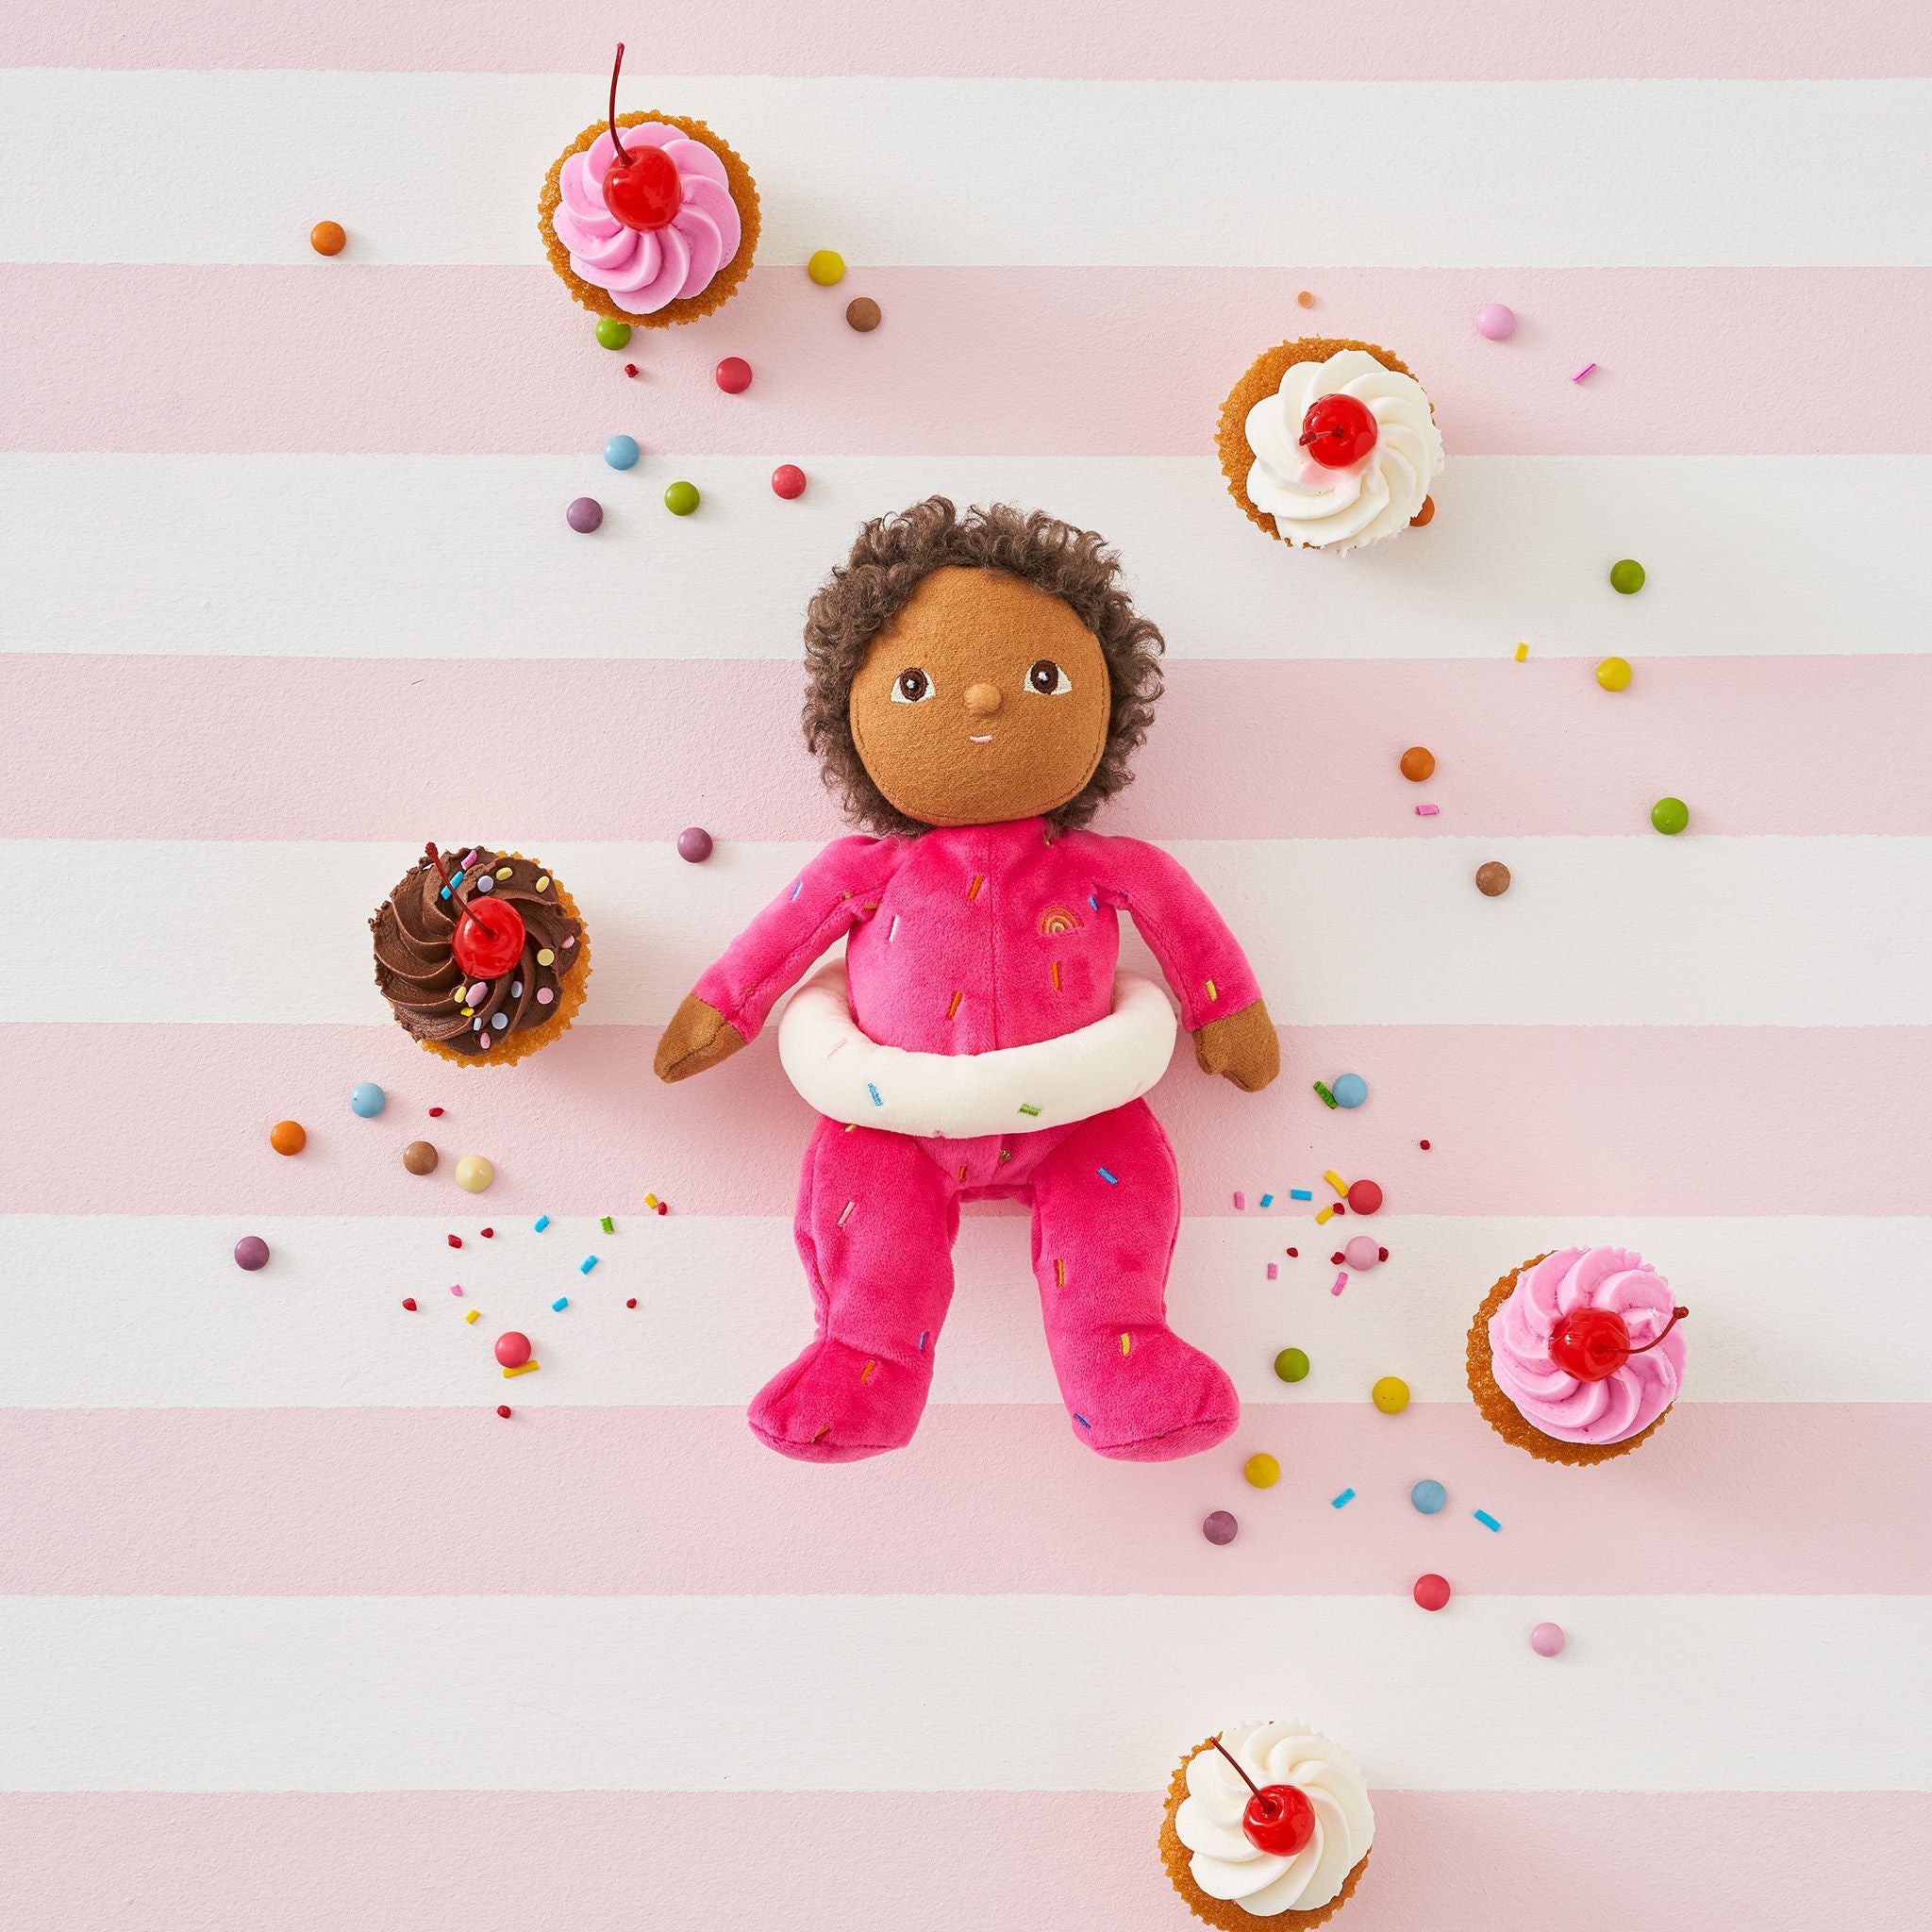 Dinky Dinkum Dolls Sadie Sprinkles: Sweet Toy Companion